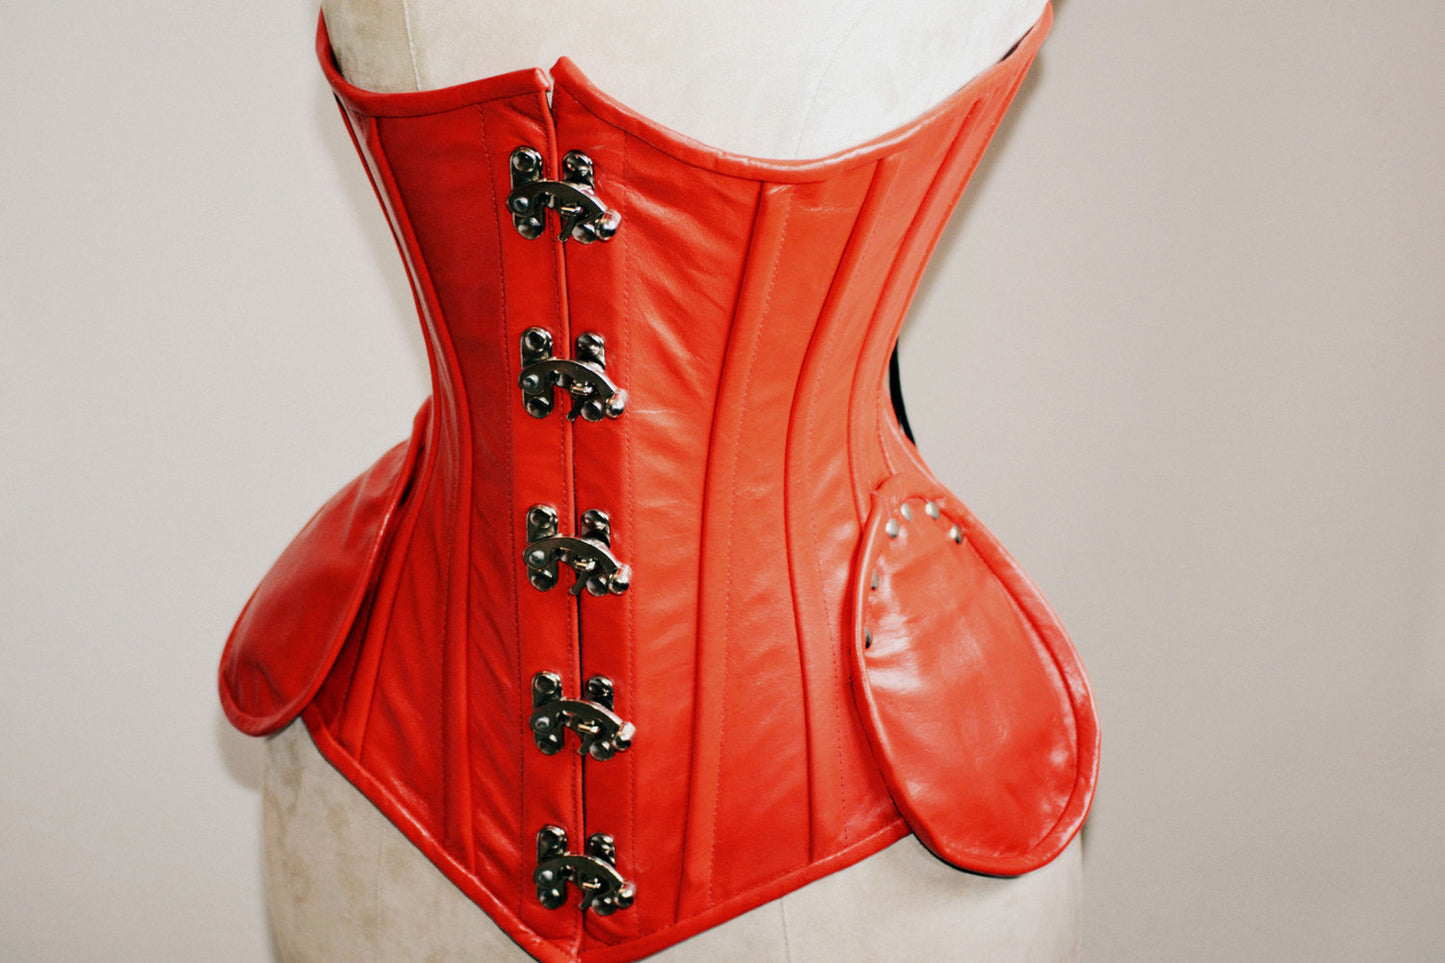 手工染色小羊皮腰部钢骨正品红色紧身胸衣。用于紧身系带和腰部训练、蒸汽朋克、哥特式的定制紧身胸衣– Corsettery Authentic